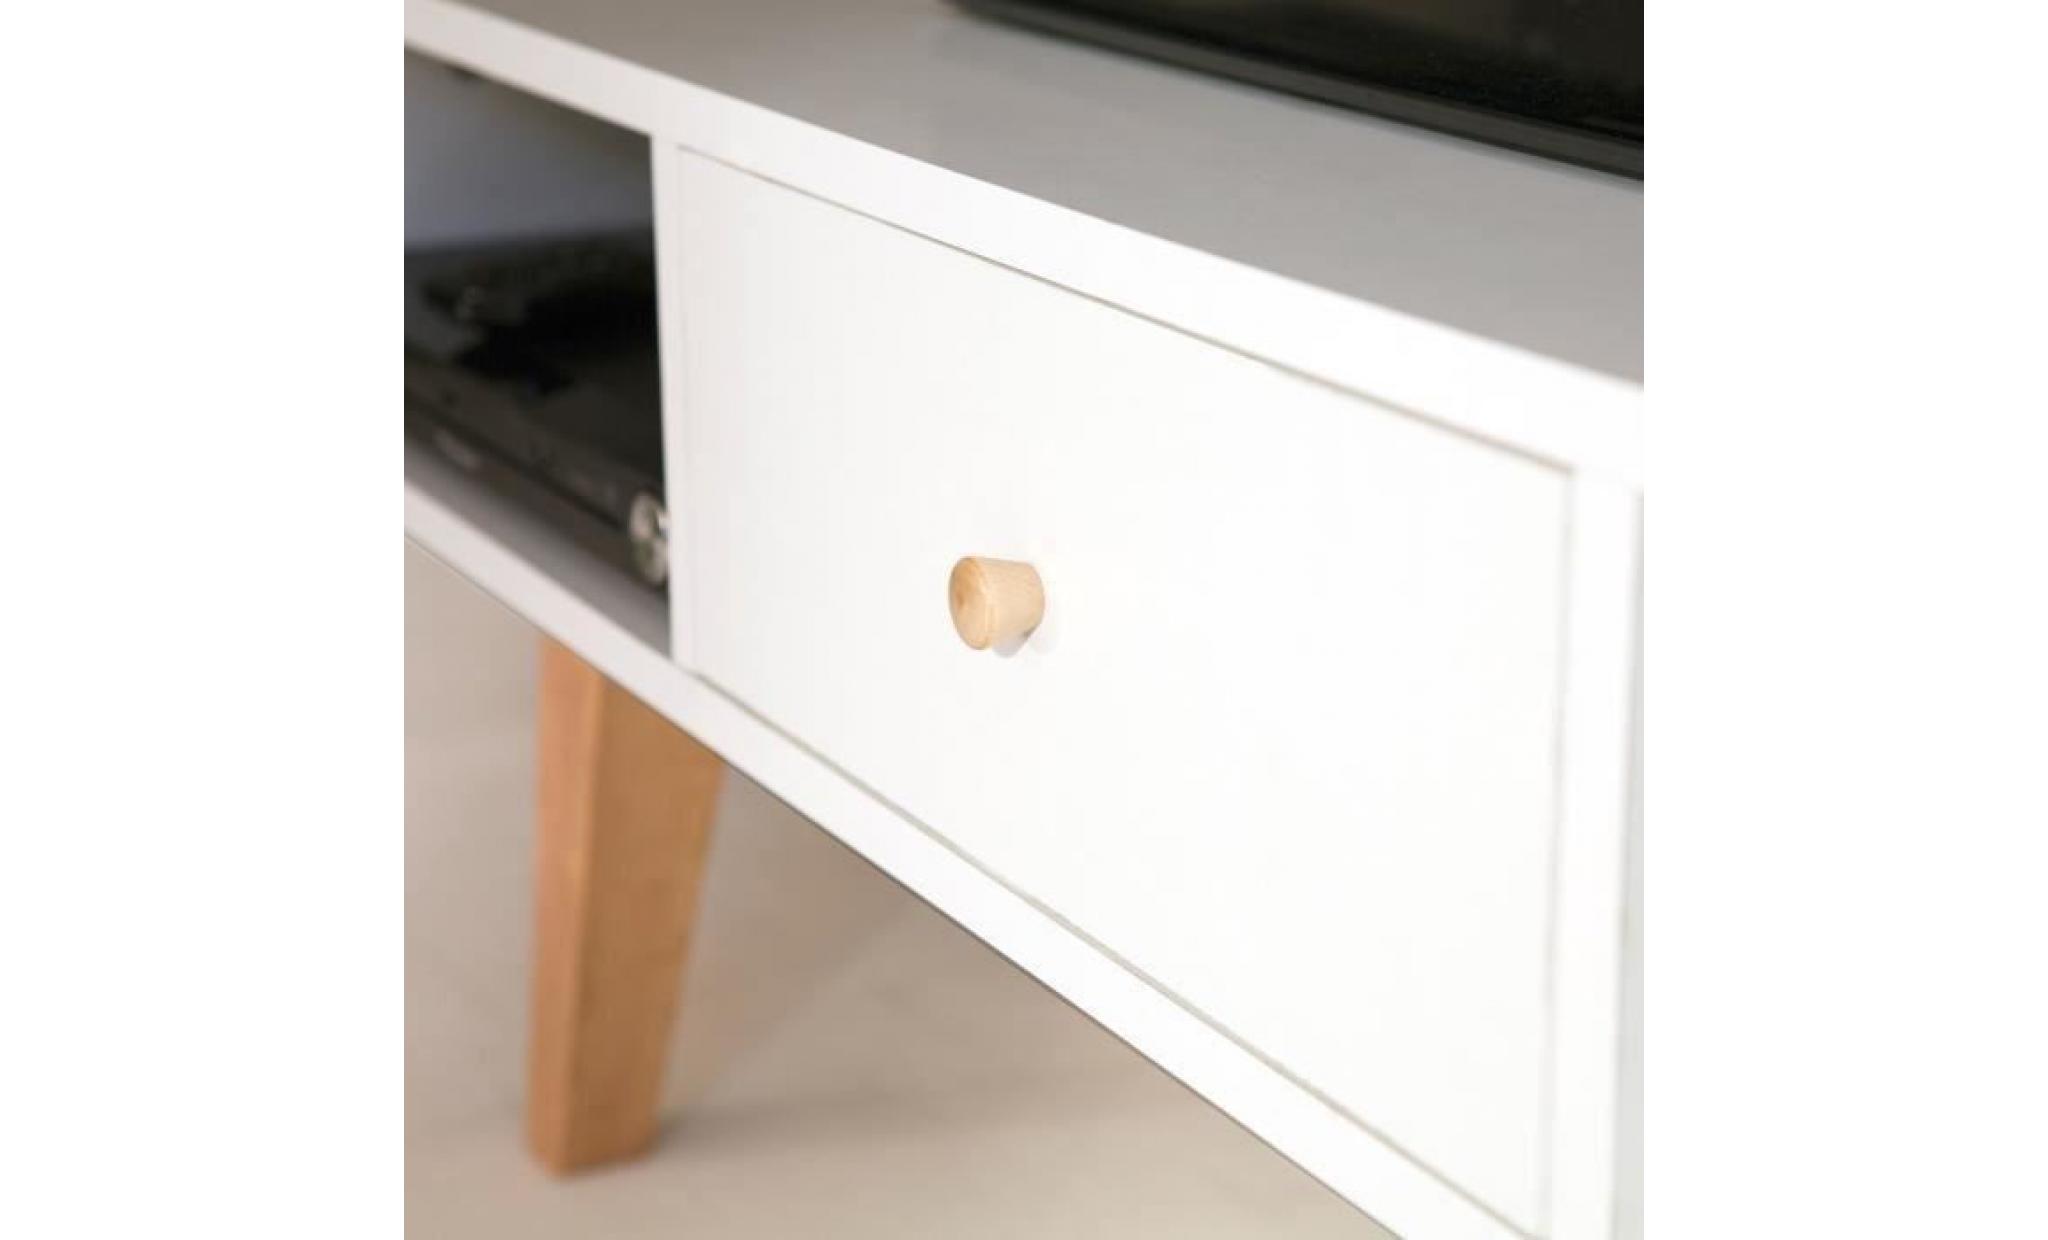 lund meuble tv scandinave blanc mat + pieds en bois massif   l 117 cm pas cher